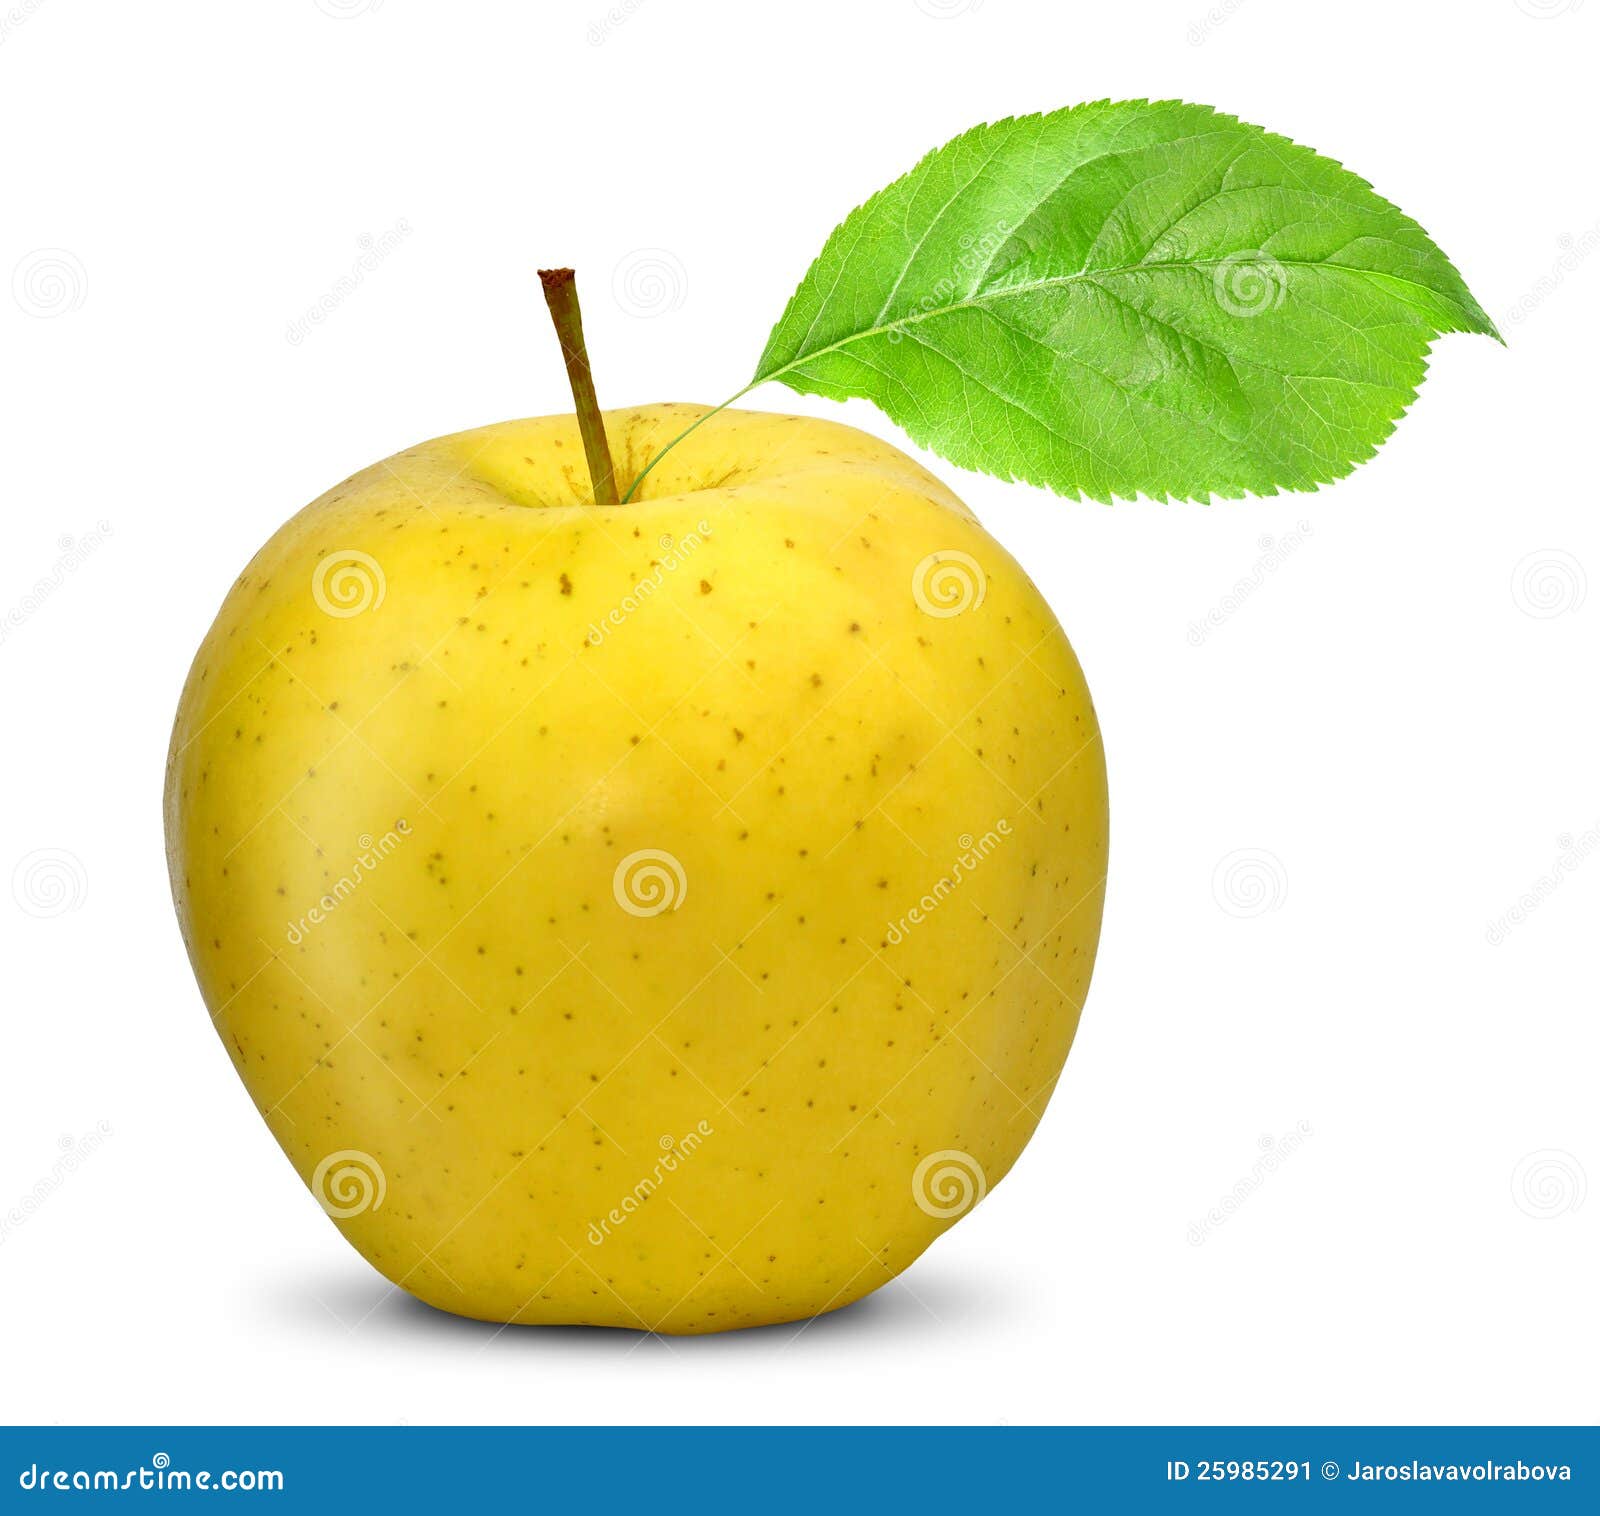 Желтое яблоко на прозрачном фоне